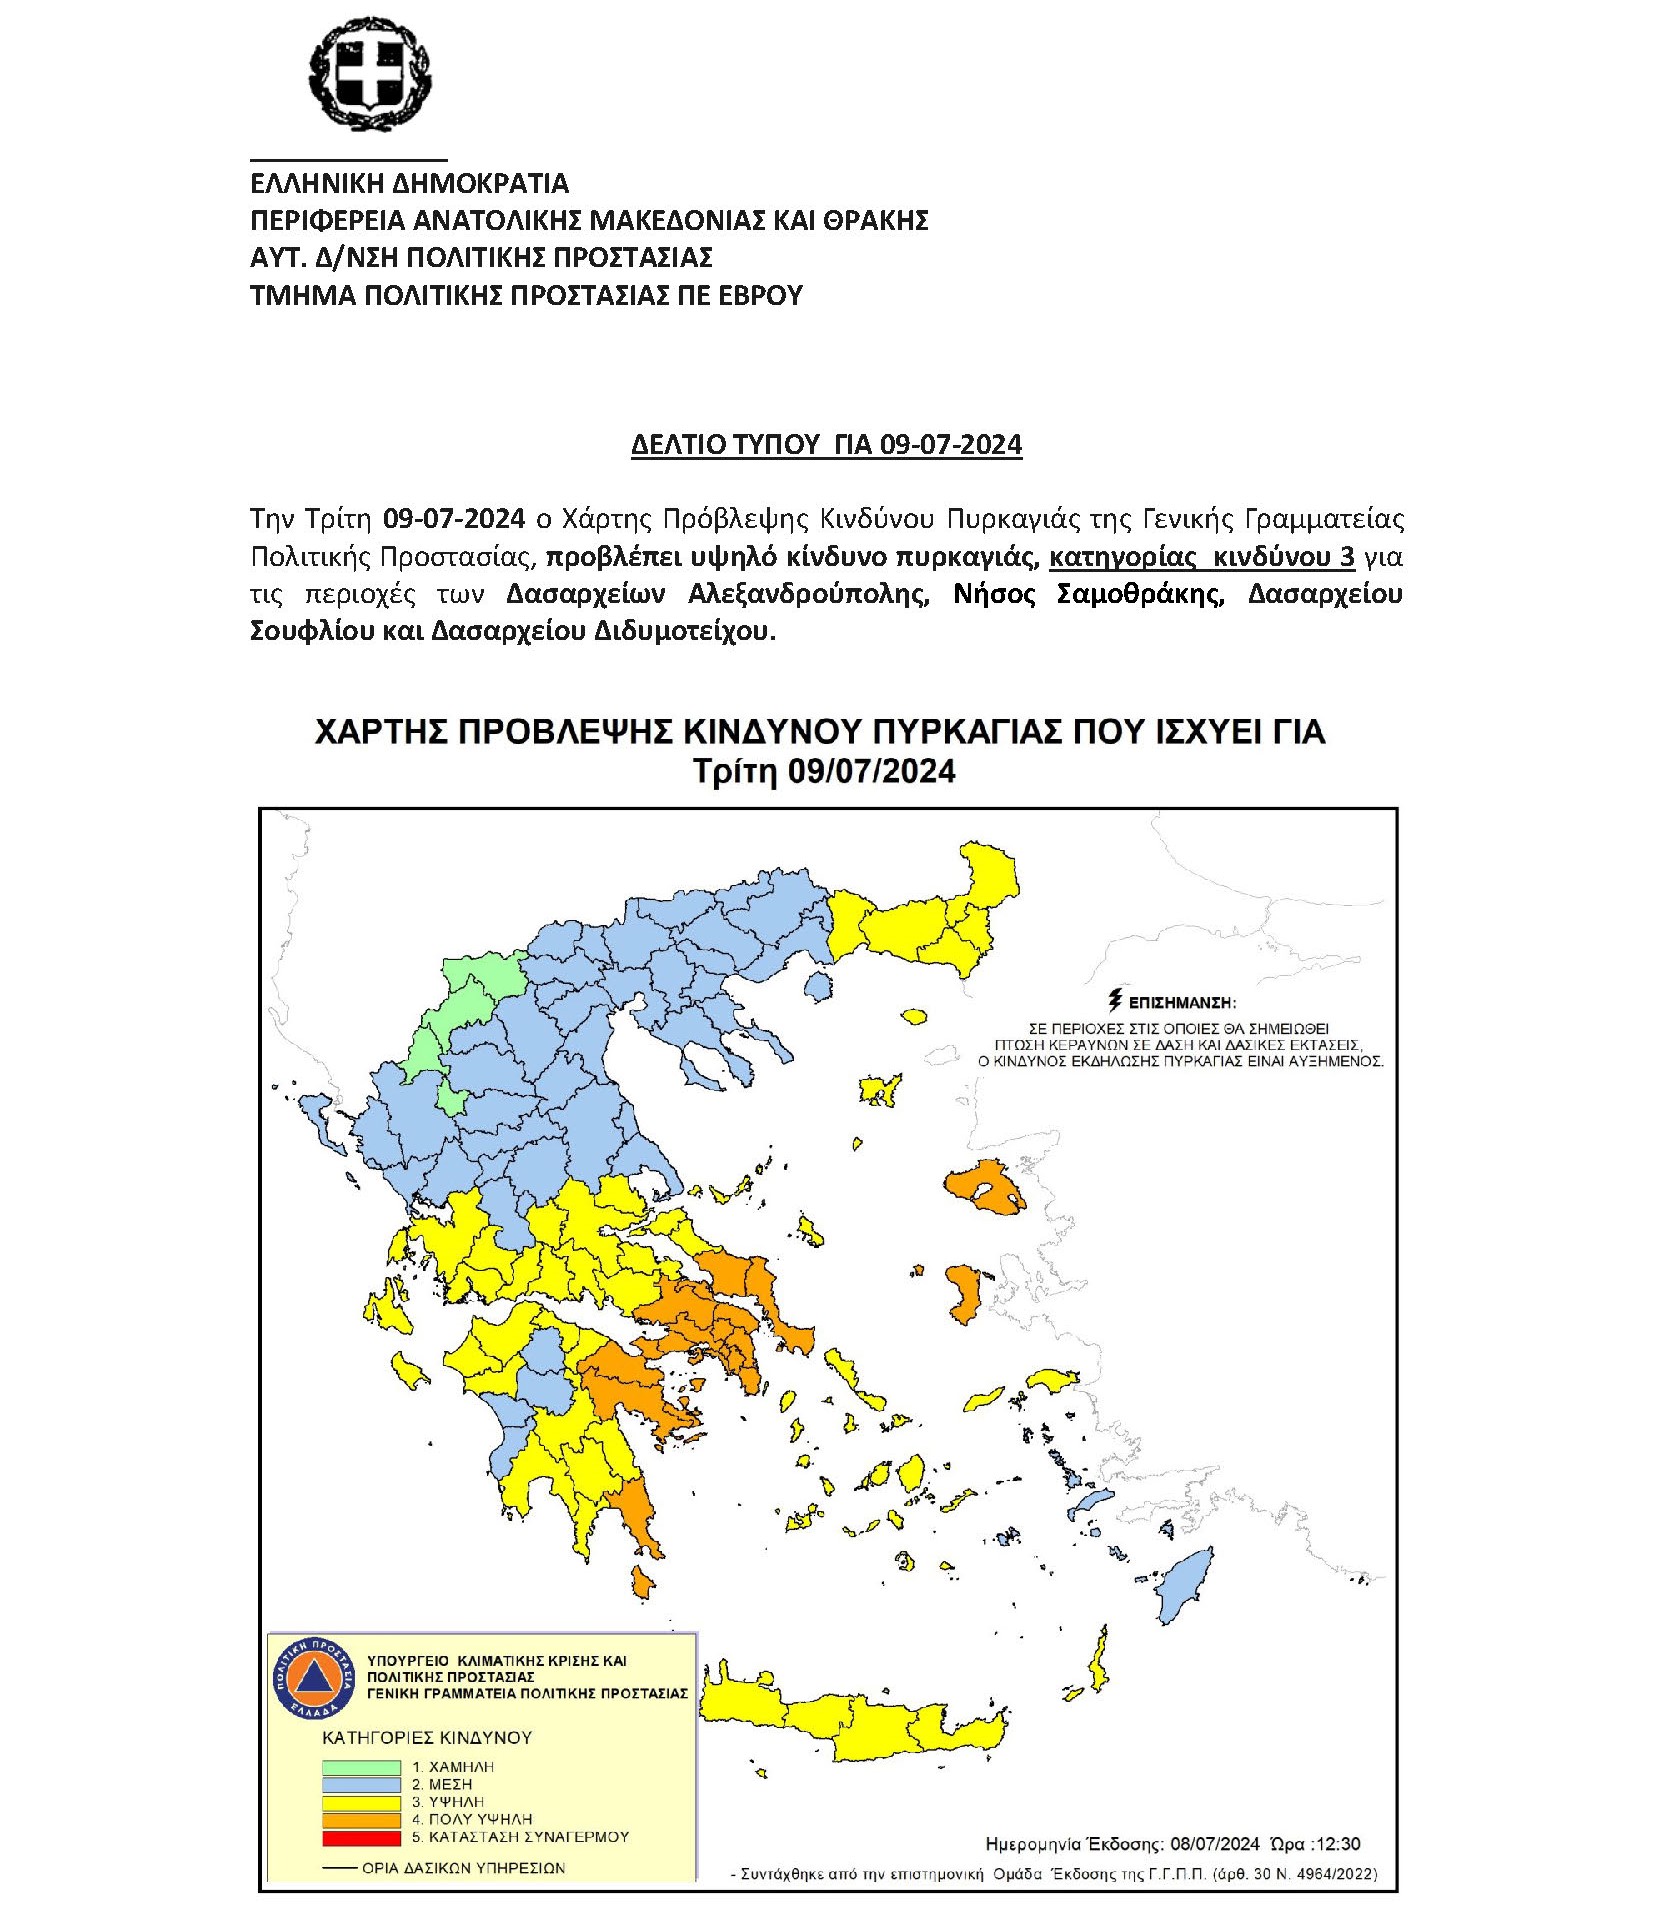 Τμήμα Πολιτικής Προστασίας ΠΕ Έβρου - Χάρτης Πρόβλεψης Κινδύνου Πυρκαγιάς της Γενικής Γραμματείας Πολιτικής Προστασίας για την Τρίτη 09-07-2024